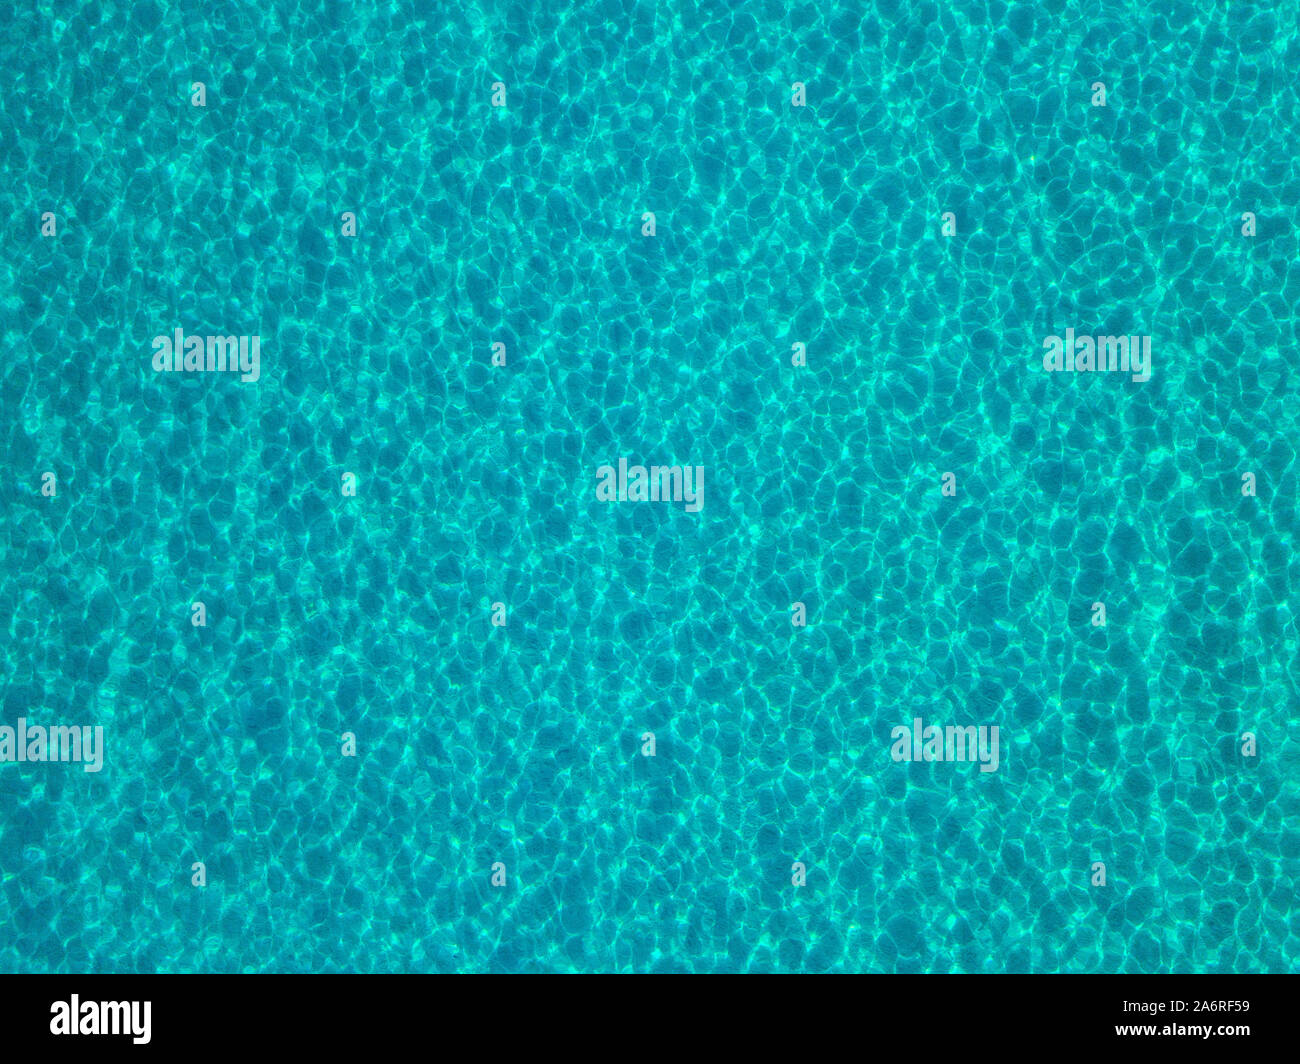 Luftaufnahme von einem sandigen Meeresboden, kristallklares blaues Wasser, Reflexionen der Sonne Wellen auf der Wasseroberfläche. Textur und Hintergrund. Pool Stockfoto